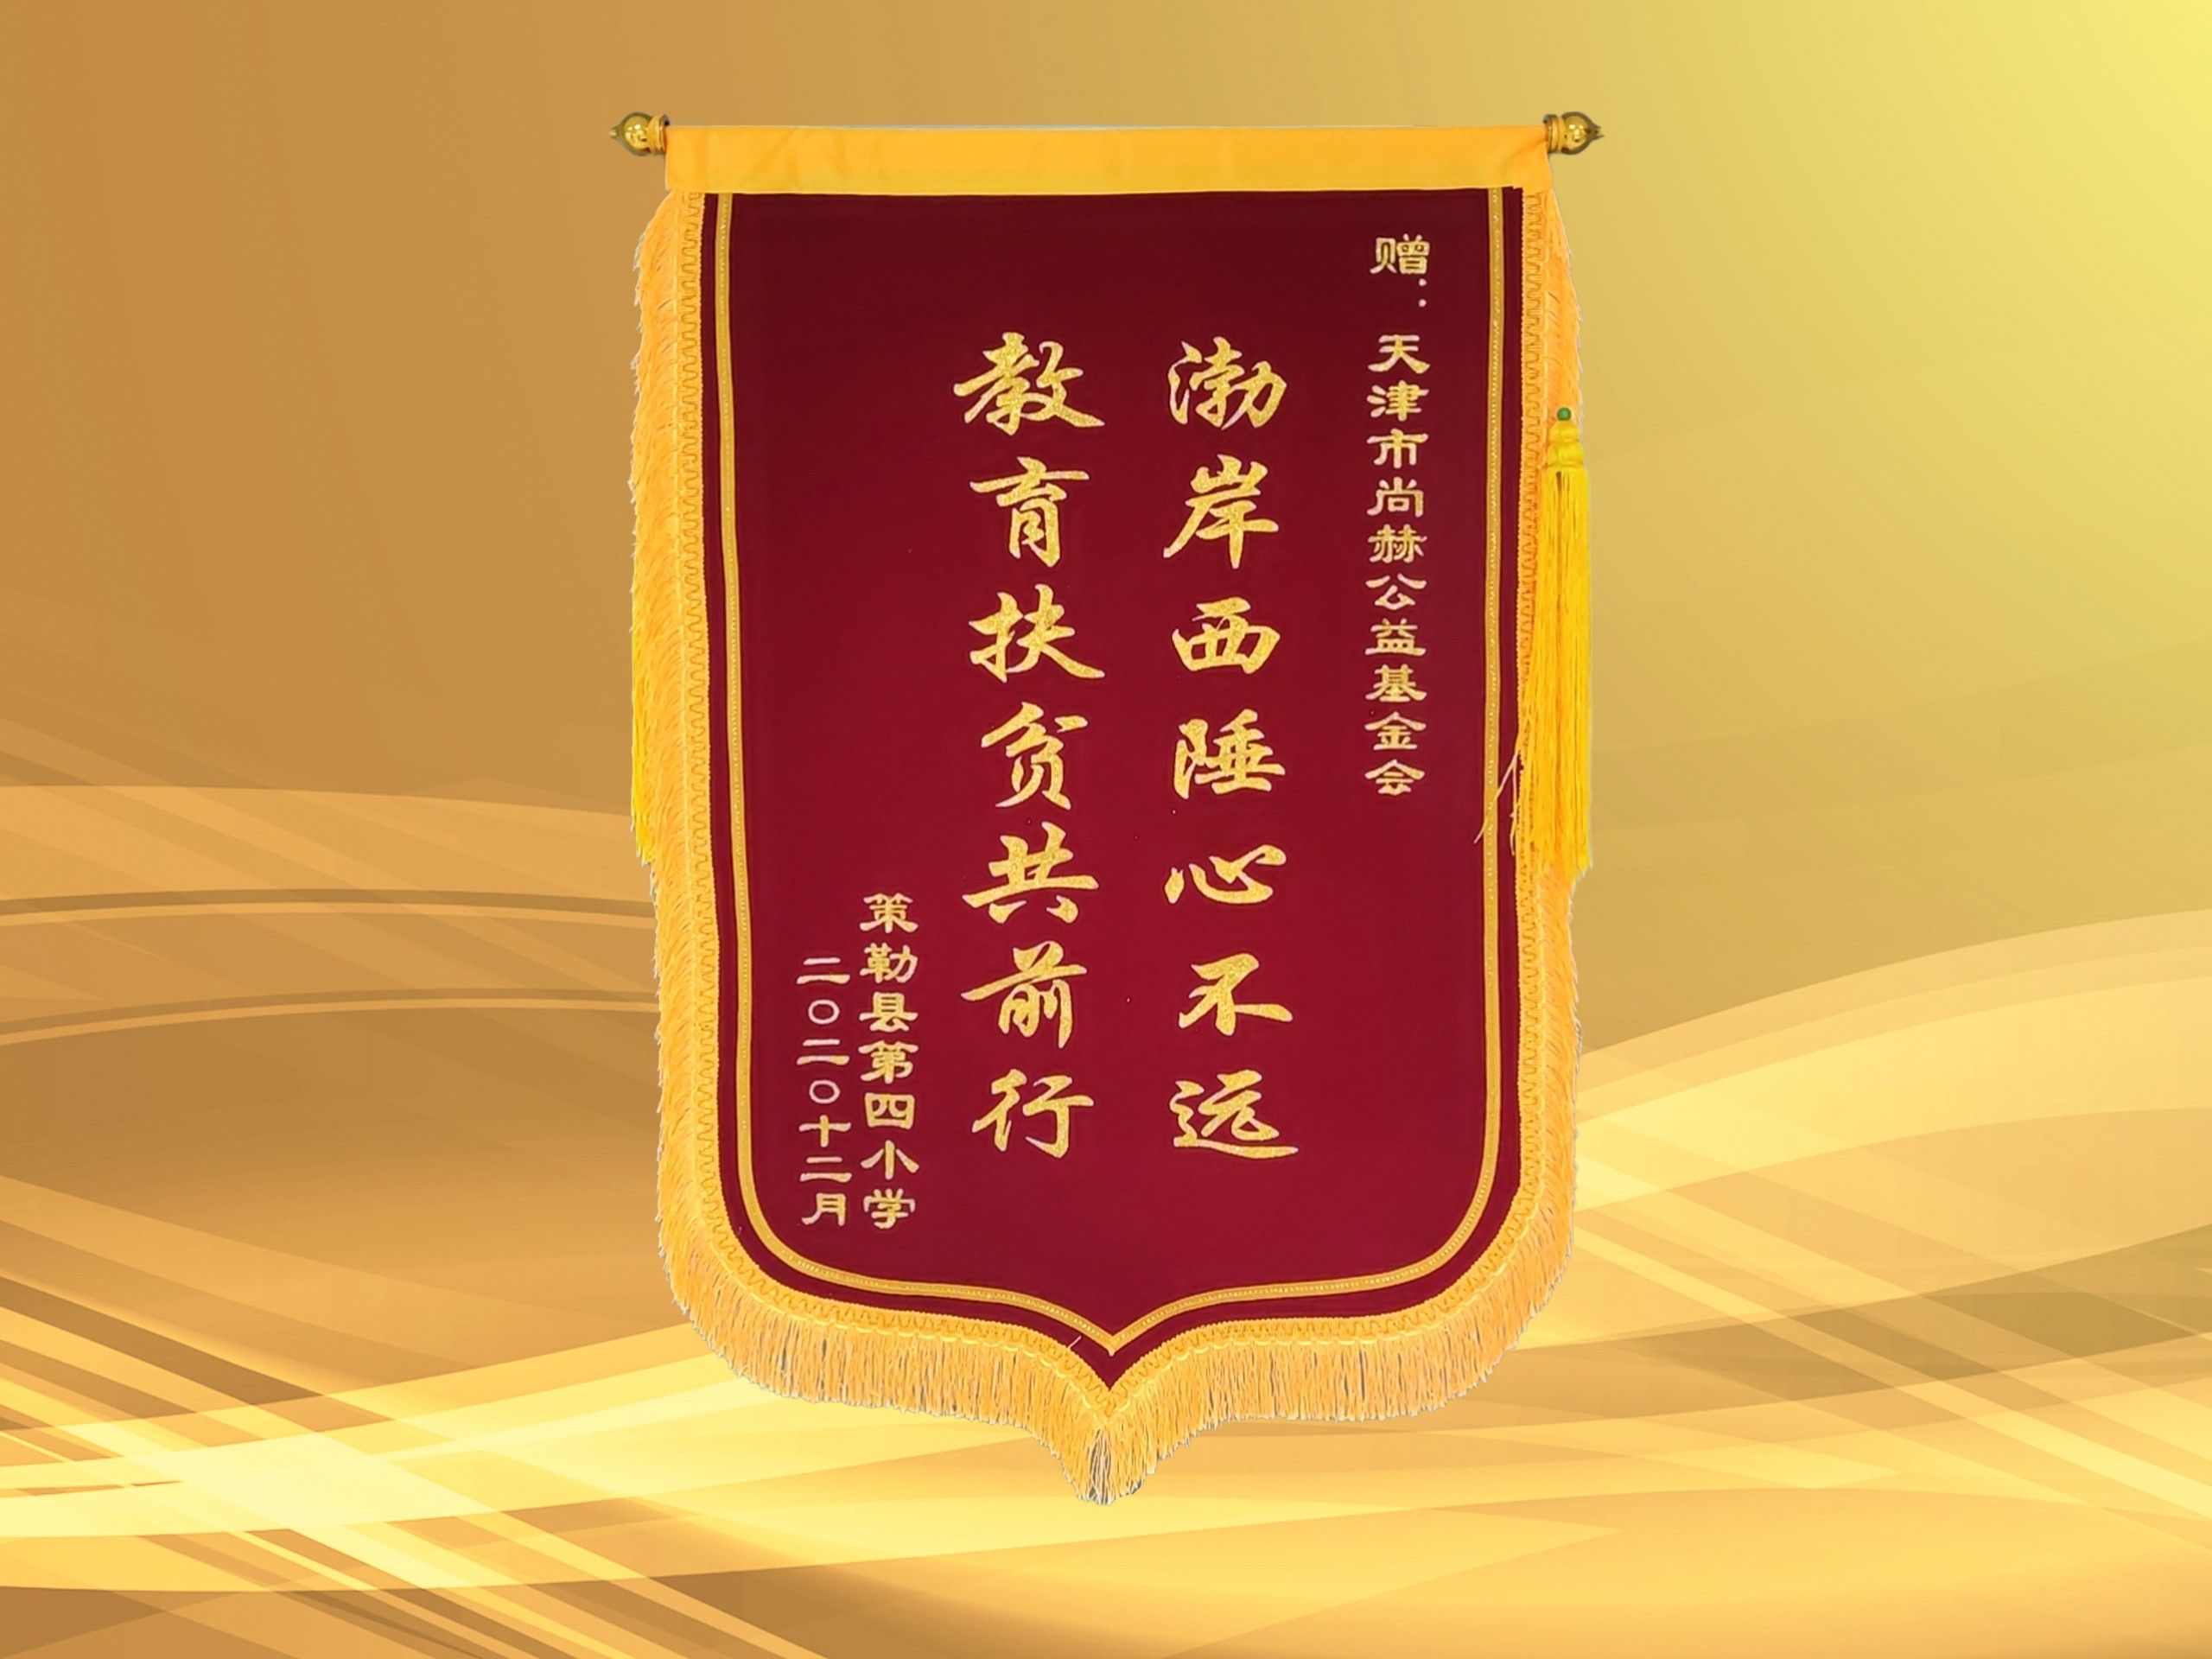 3月-皇家体育(中国)有限责任公司公益基金会收到新疆策勒县第四小学赠予的锦旗